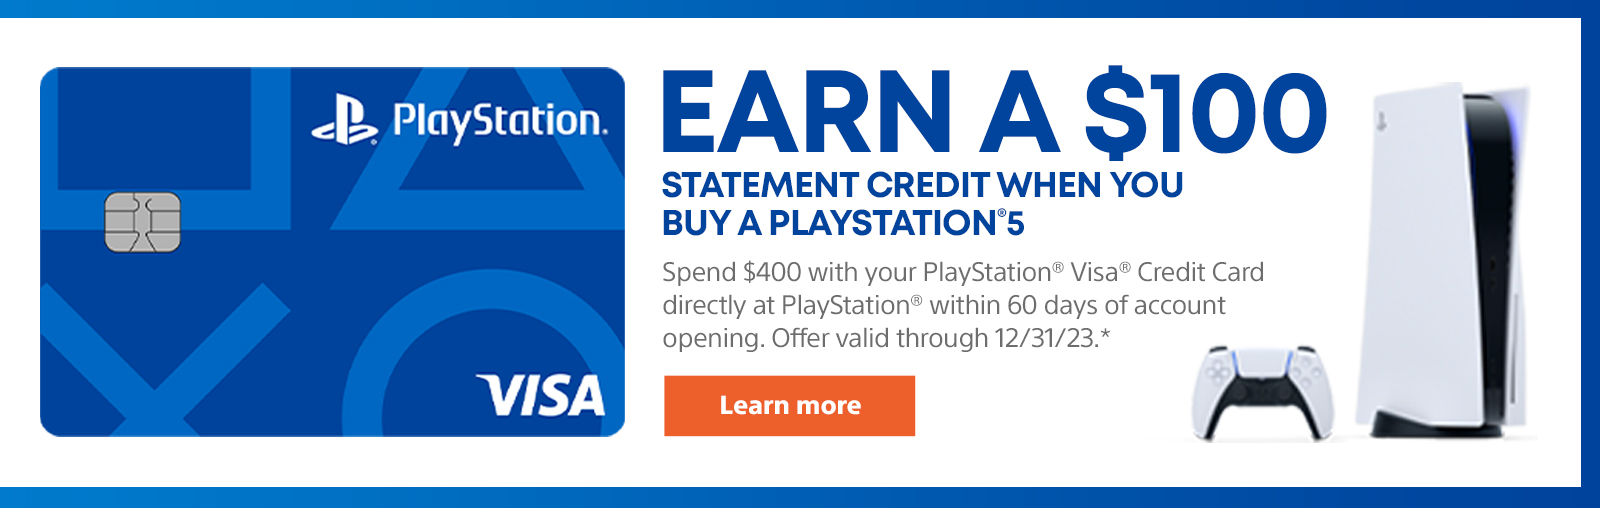 รับเครดิตใบแจ้งยอด $ 100 เมื่อคุณซื้อ PlayStation 5. ใช้บัตรเครดิต PlayStation Visa เพื่อใช้จ่าย $ 400 โดยตรงที่ PlayStation ภายใน 60 วันของการเปิดบัญชี ข้อเสนอที่ใช้ได้ถึง 12/31/23